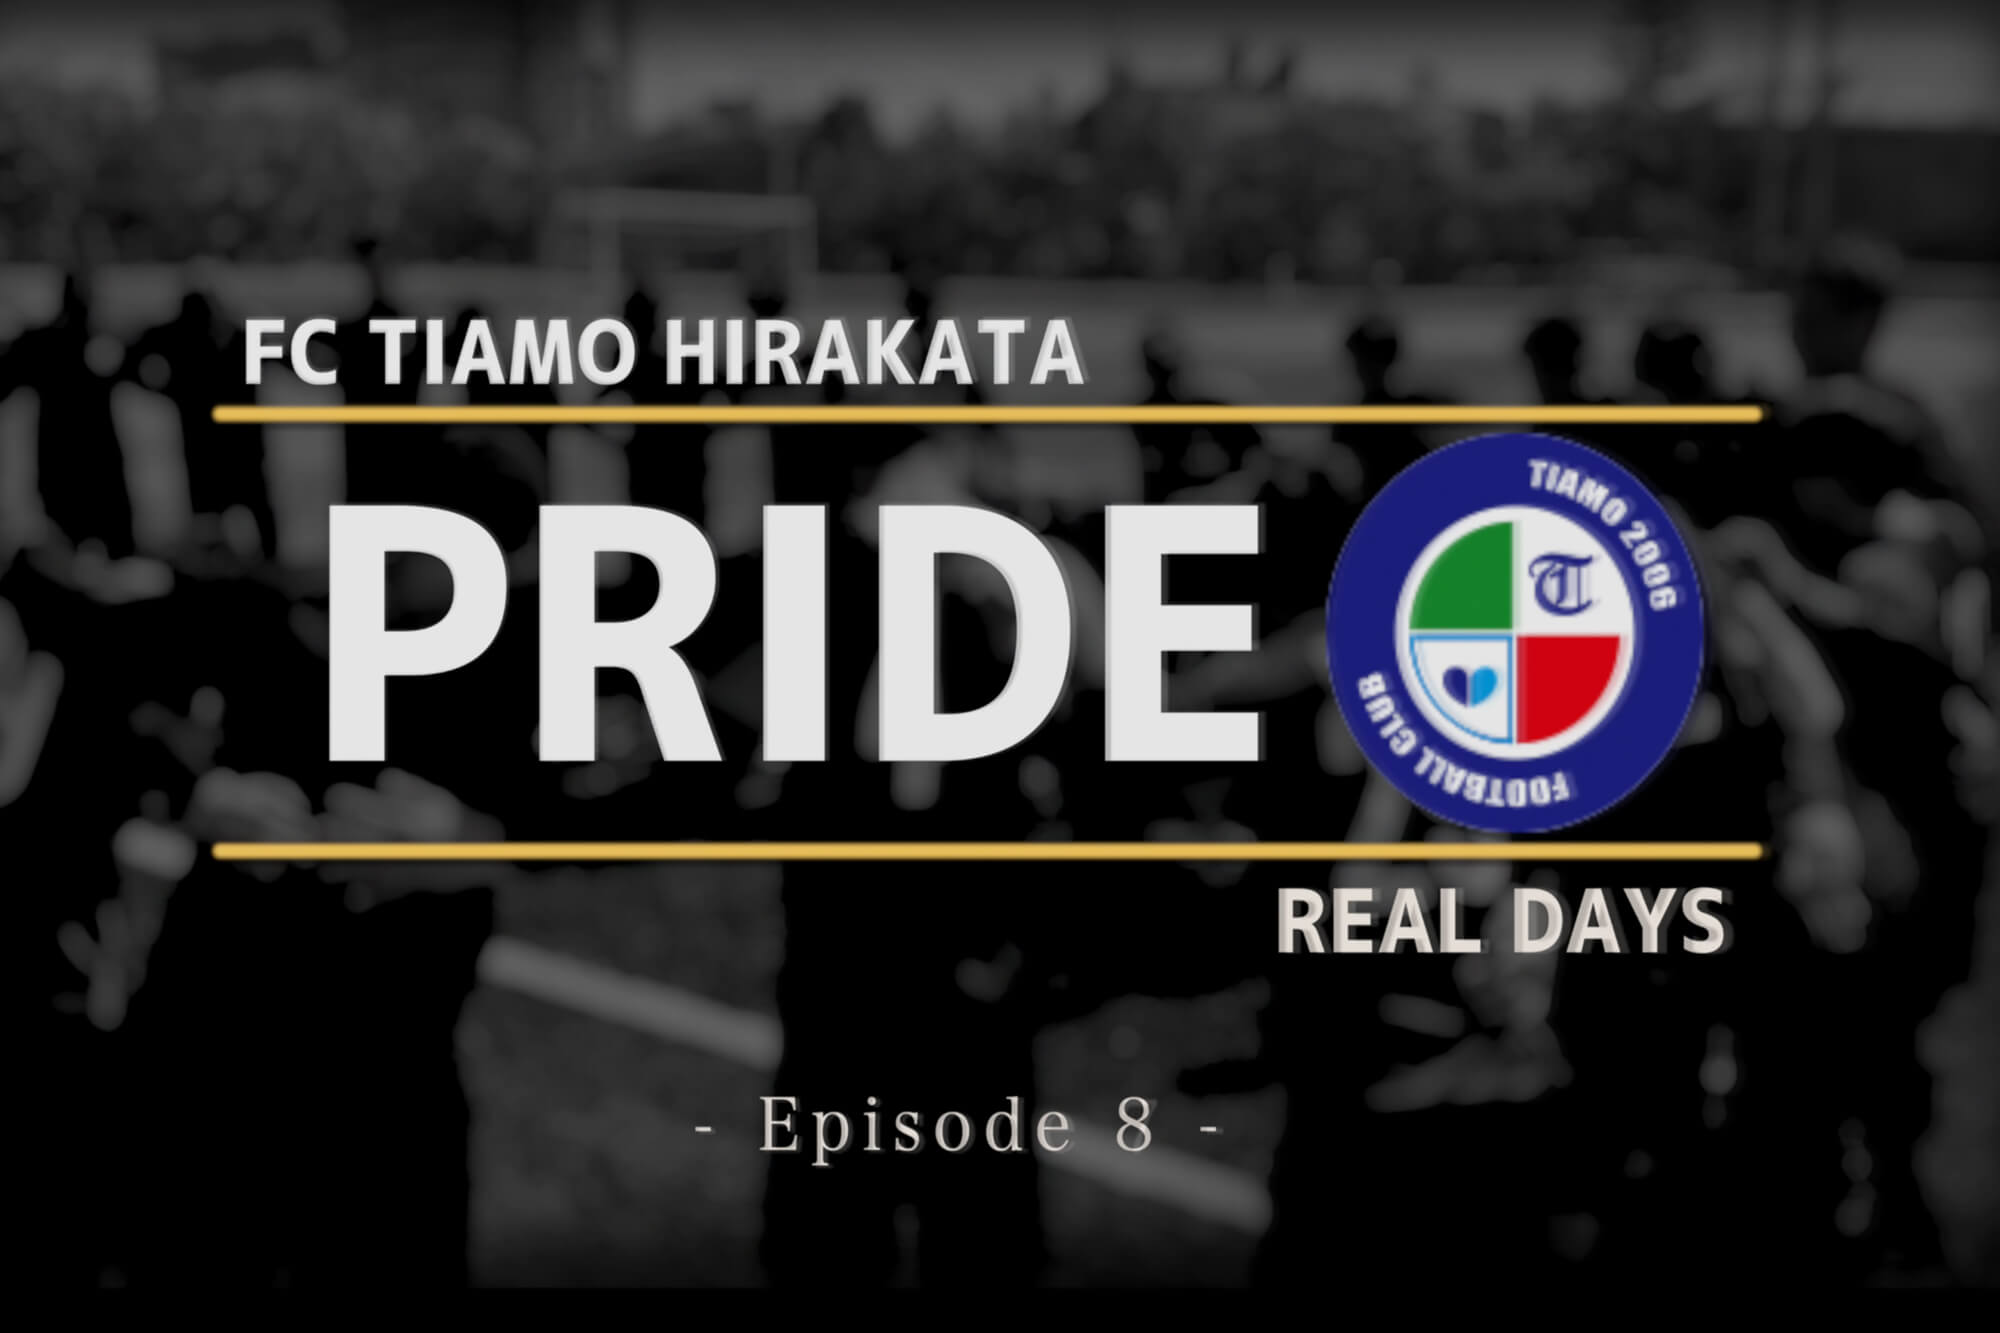 Fc Tiamo枚方 Episode8 地域決勝チャンピオンズリーグ予選ラウンド Reibola 新しいサッカーメディア